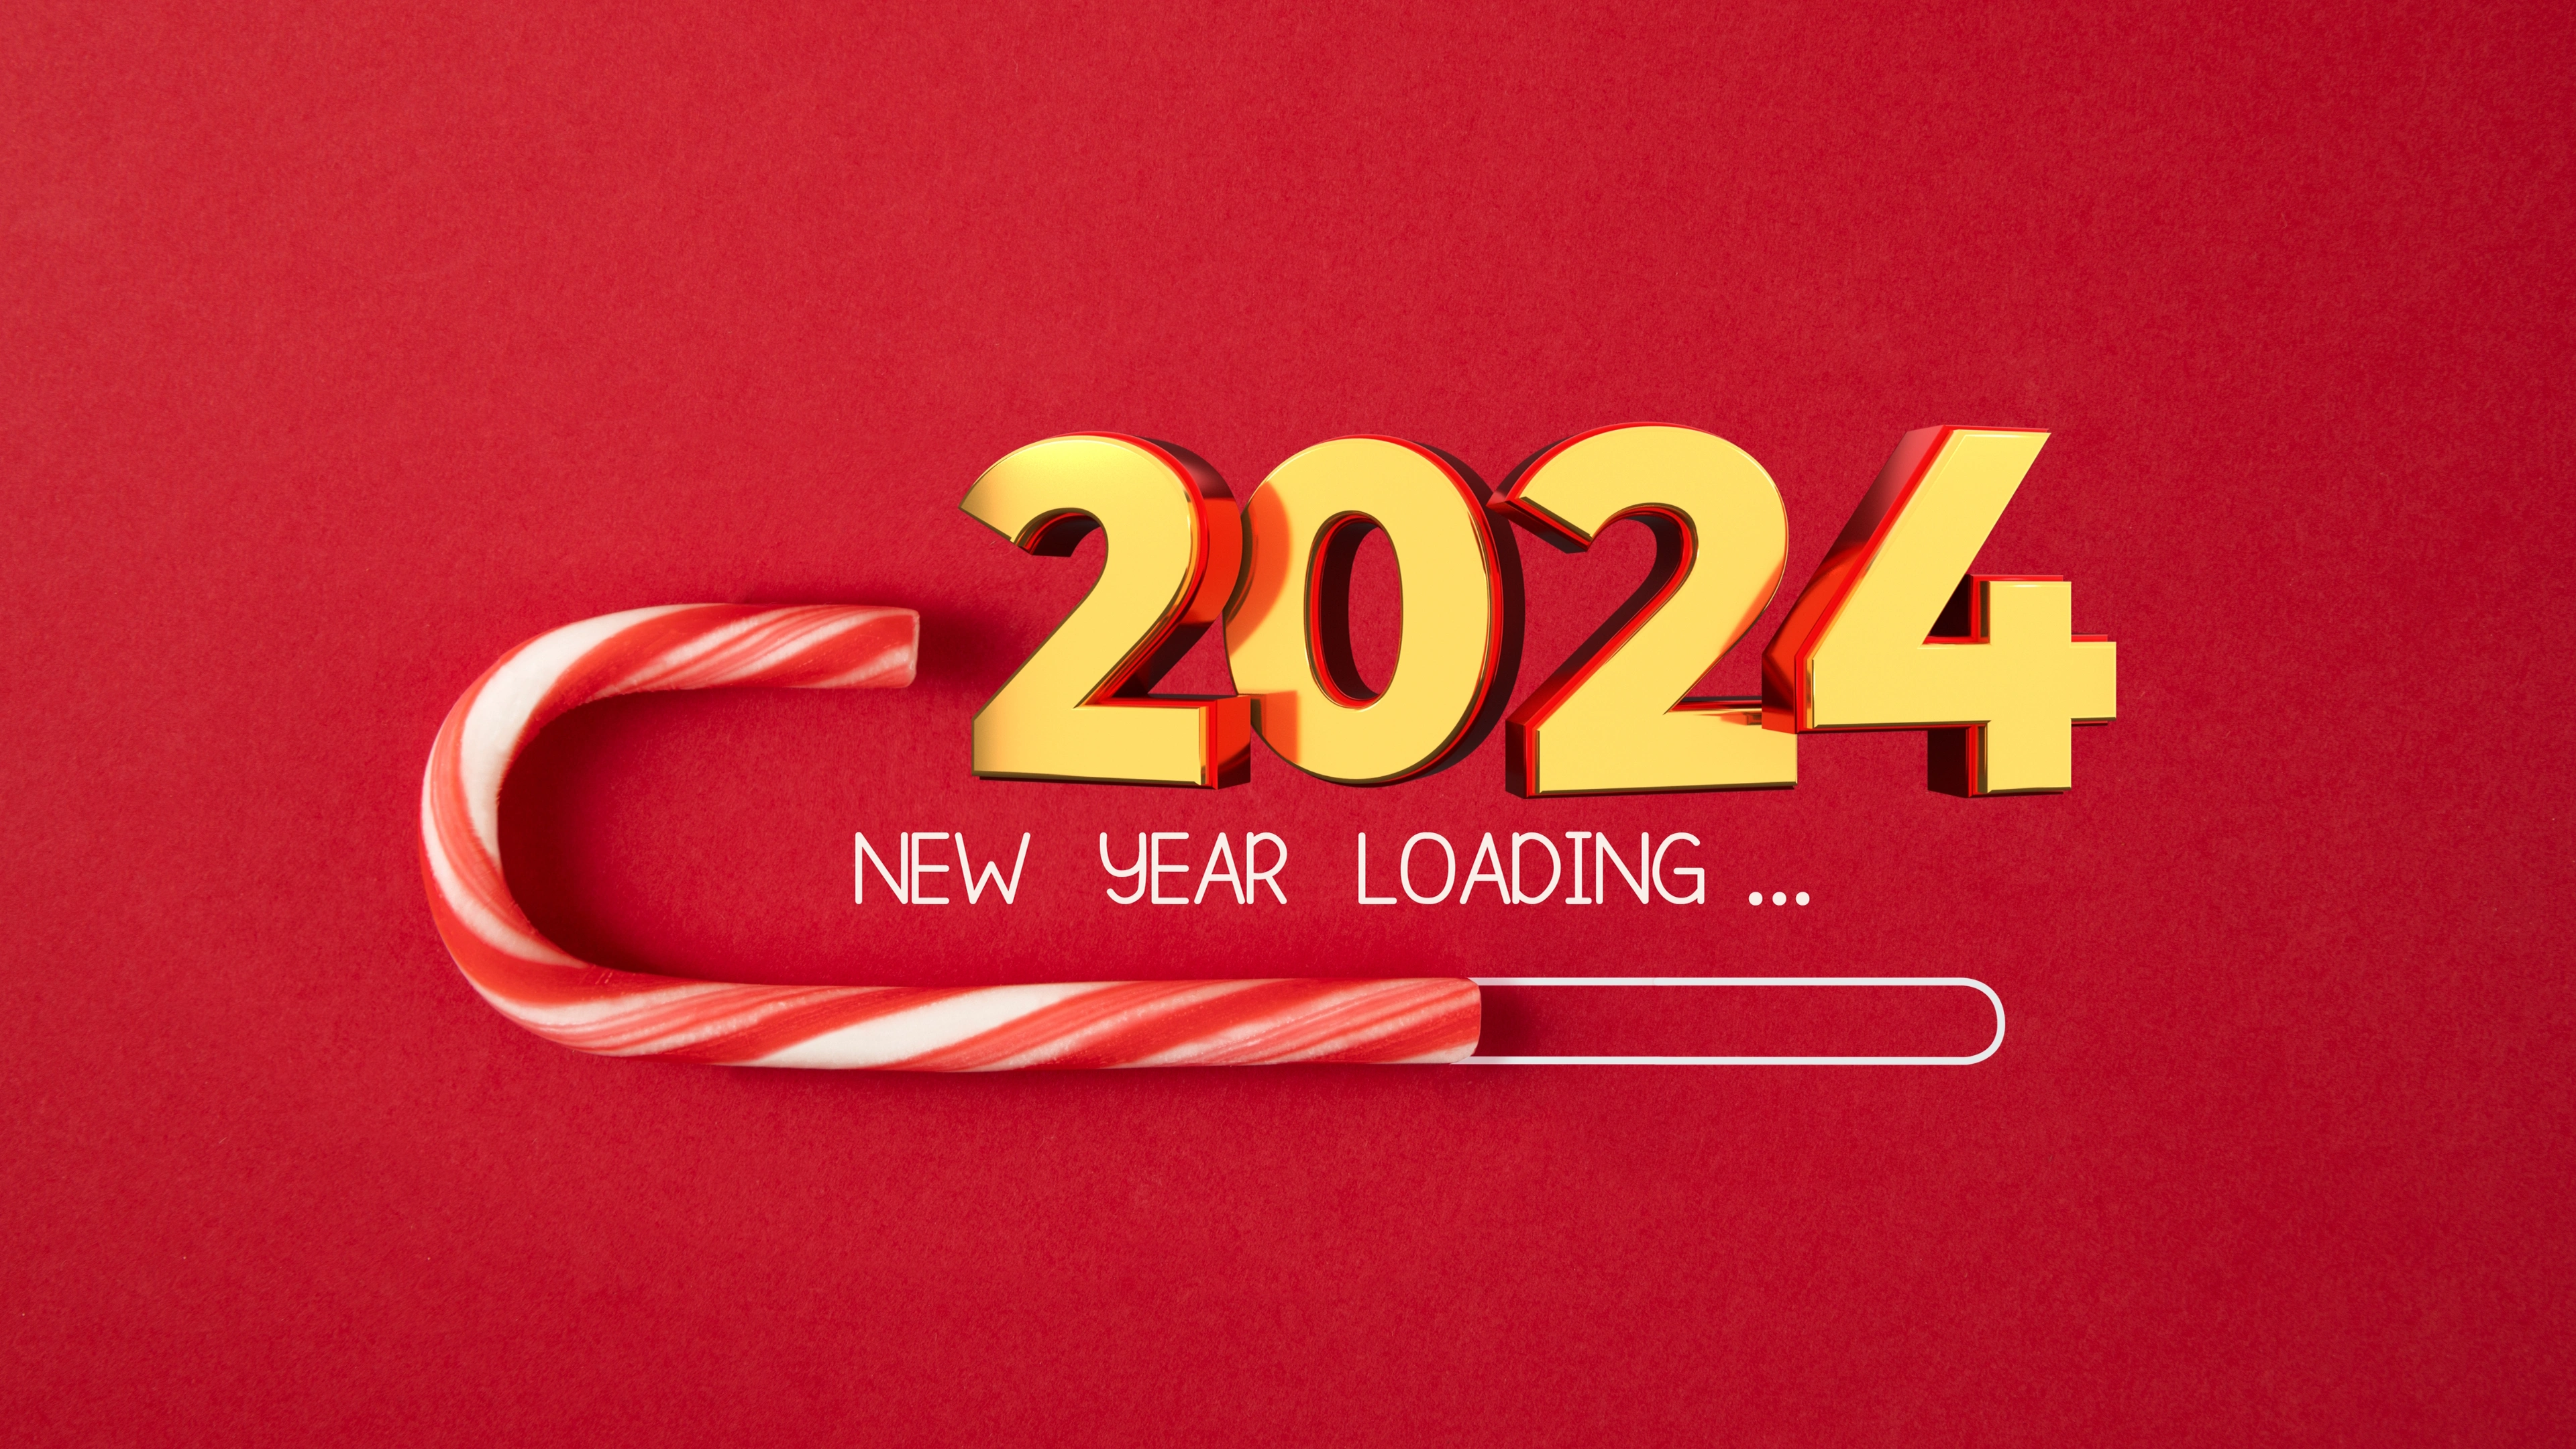 New Year Loading 2024 4k UHD Wallpaper for desktop